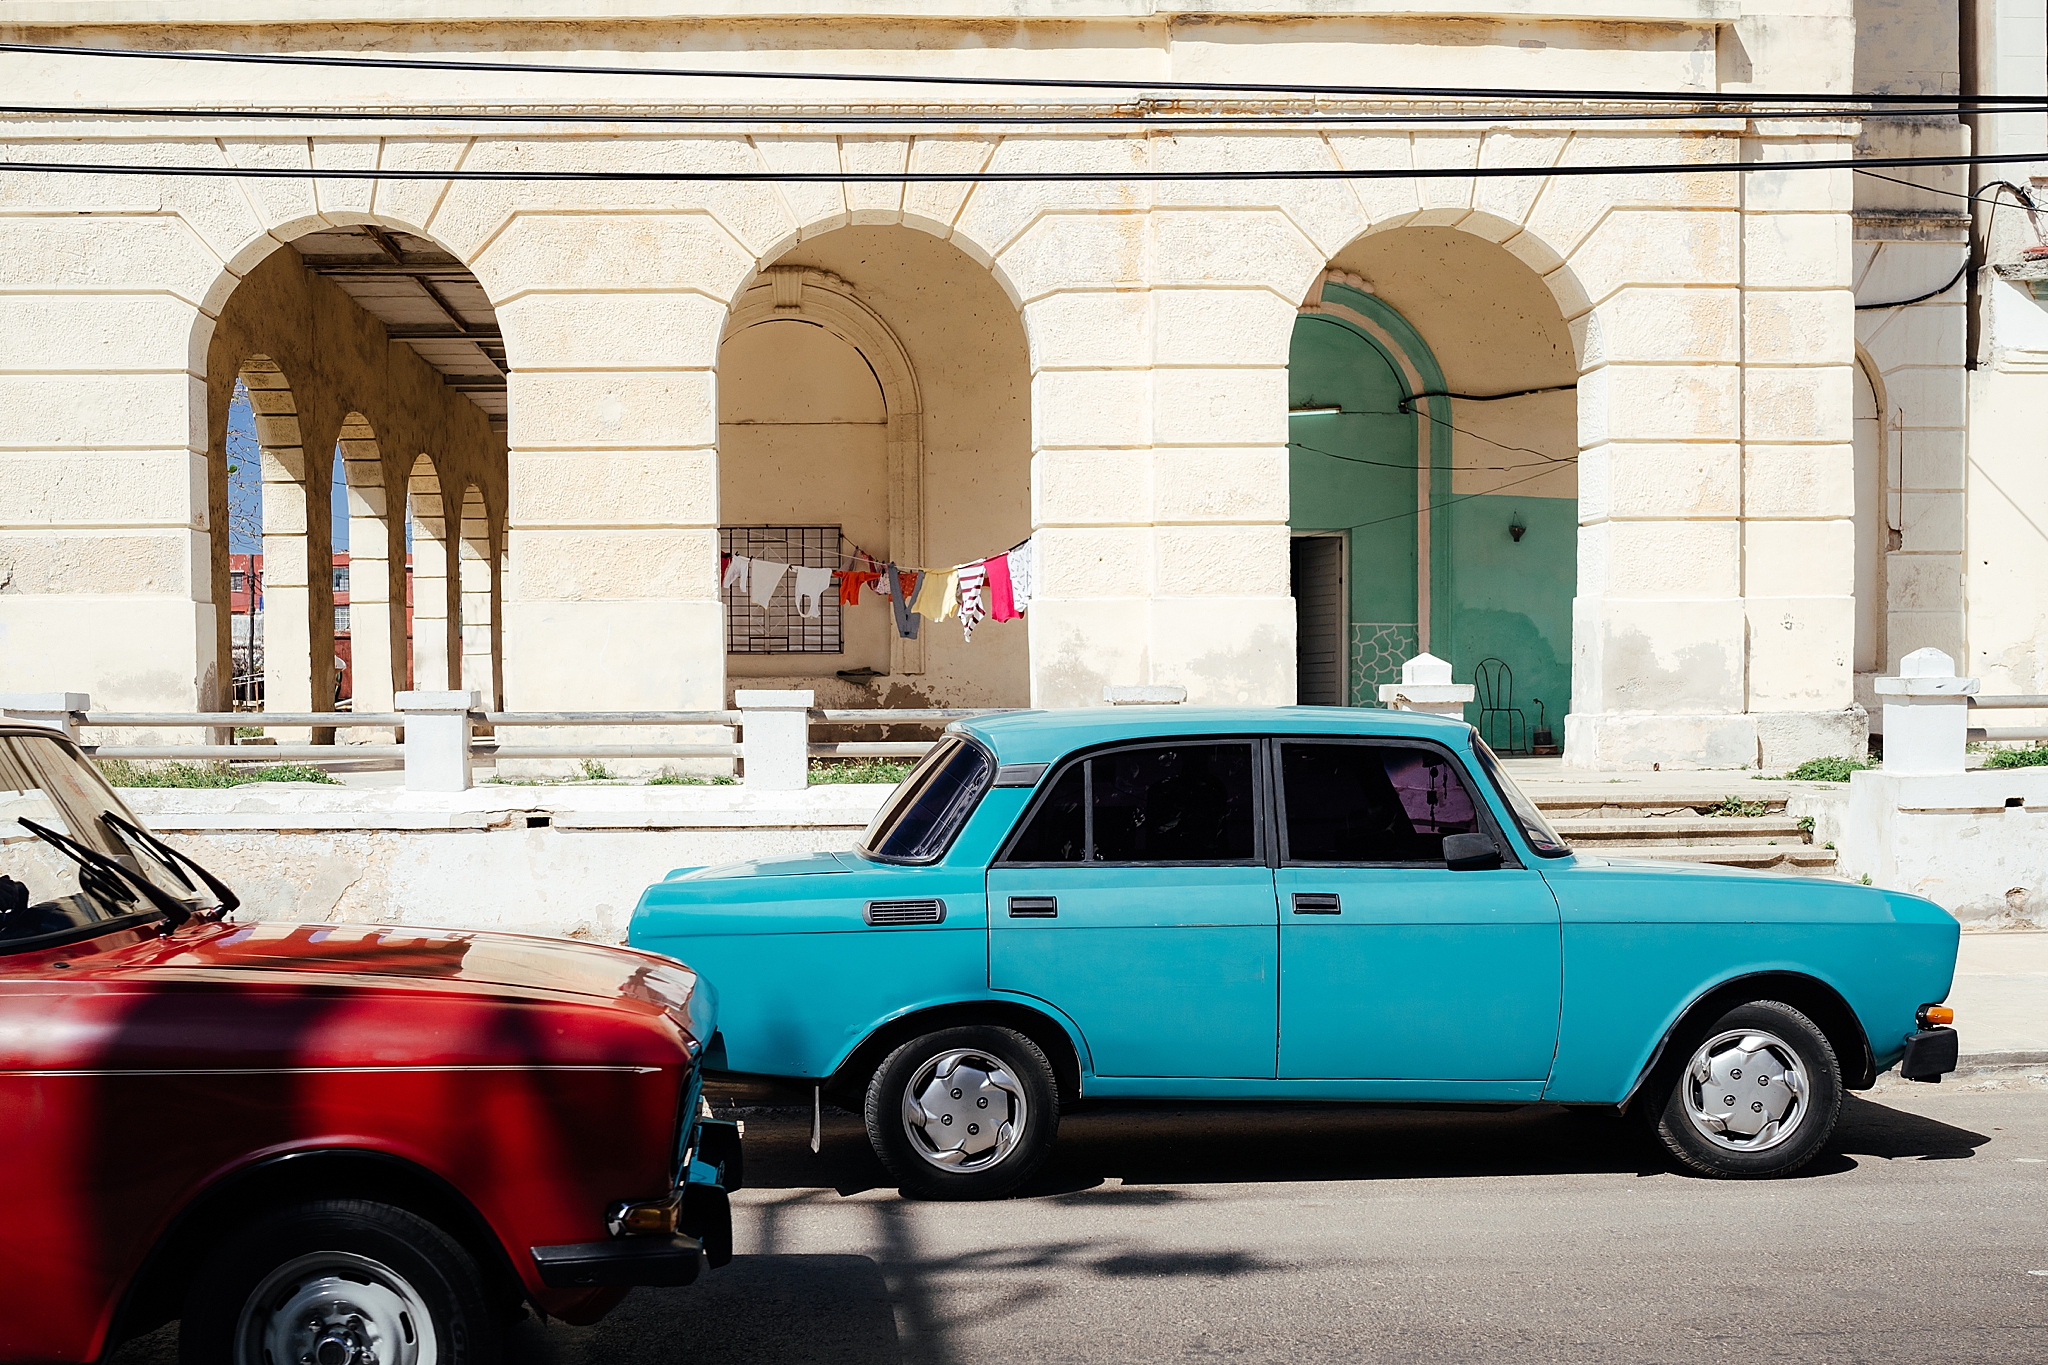  Bright cars in the Vedado neighborhood of Havana 